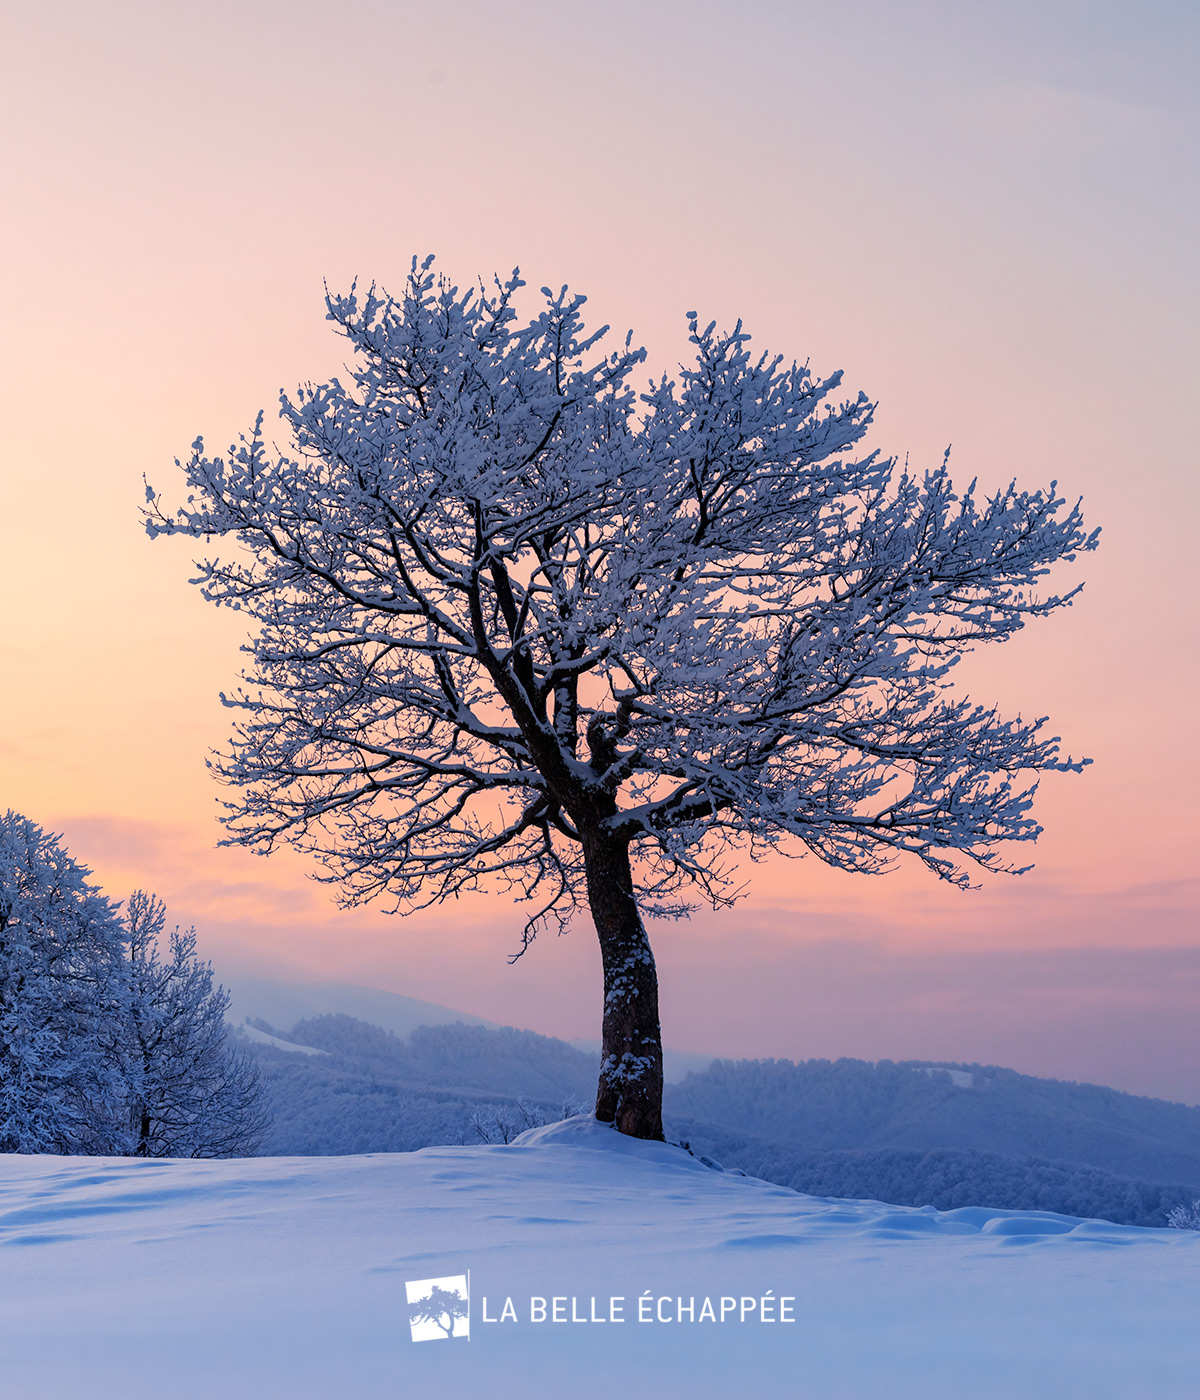 Nouveau logo créé pour La Belle Echappée par Caramel & Paprika - Photo d'un arbre seul dans un paysage de montagne eneigée (photo © Adobe Stock)